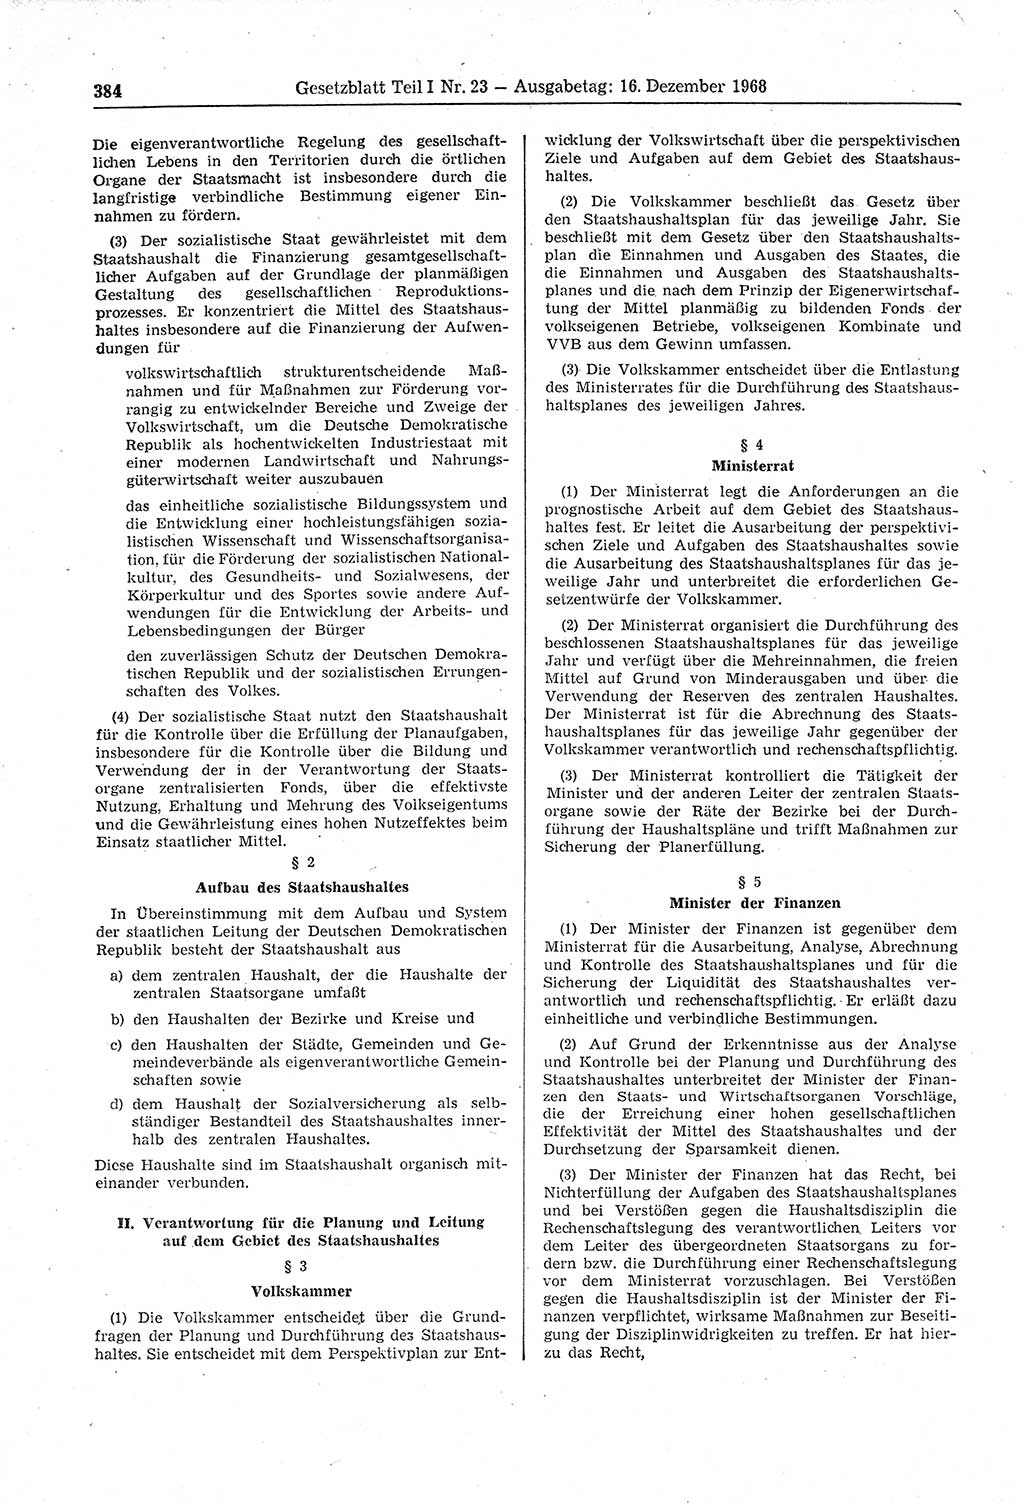 Gesetzblatt (GBl.) der Deutschen Demokratischen Republik (DDR) Teil Ⅰ 1968, Seite 384 (GBl. DDR Ⅰ 1968, S. 384)